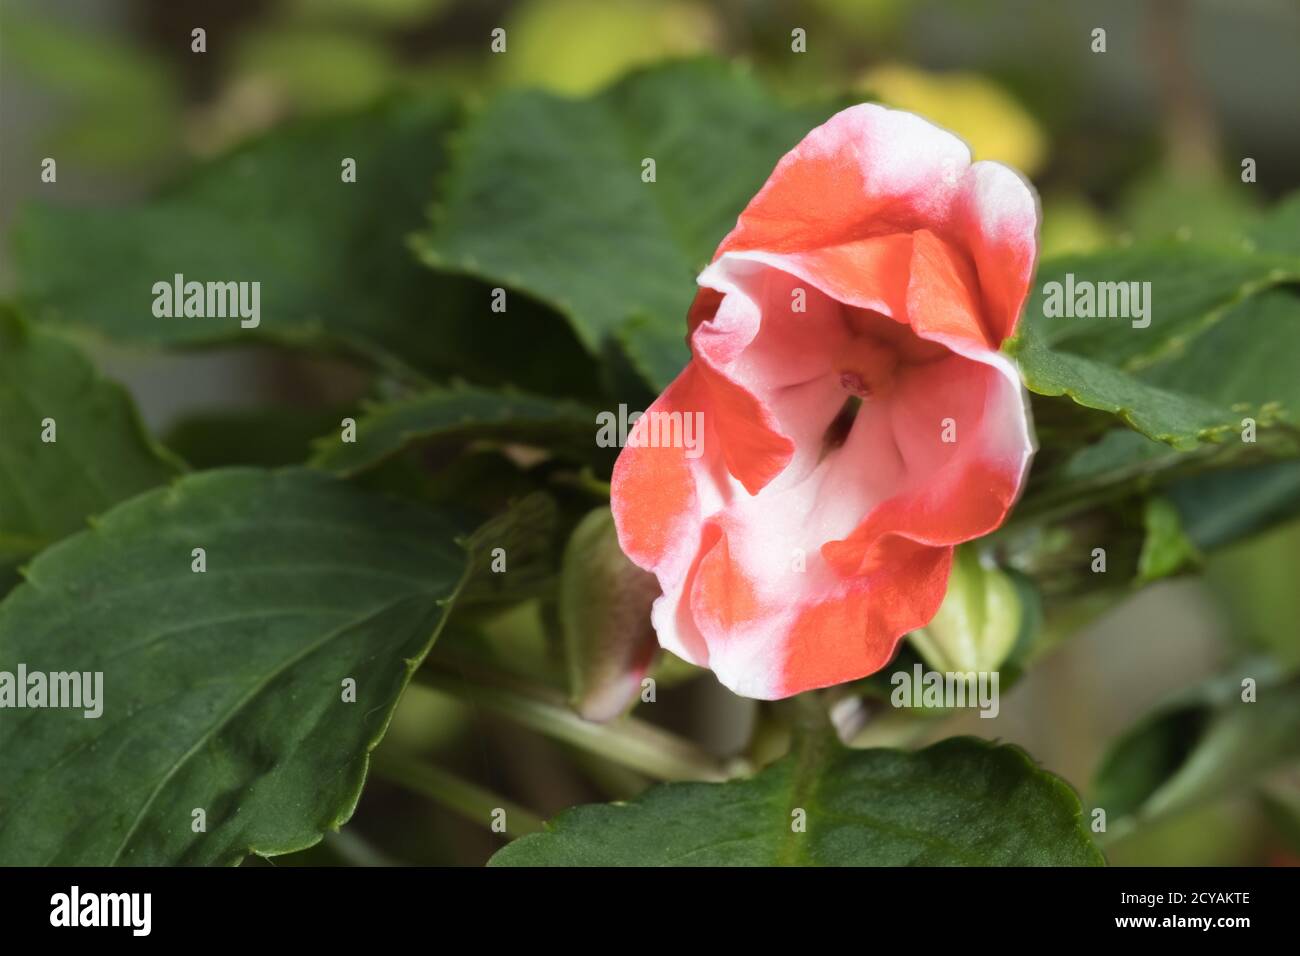 Une plante Impatiens Impatiens walleriana a également appelé Busy Lizzie, balsam, ou sultana, avec une seule fleur rouge et blanche. Banque D'Images